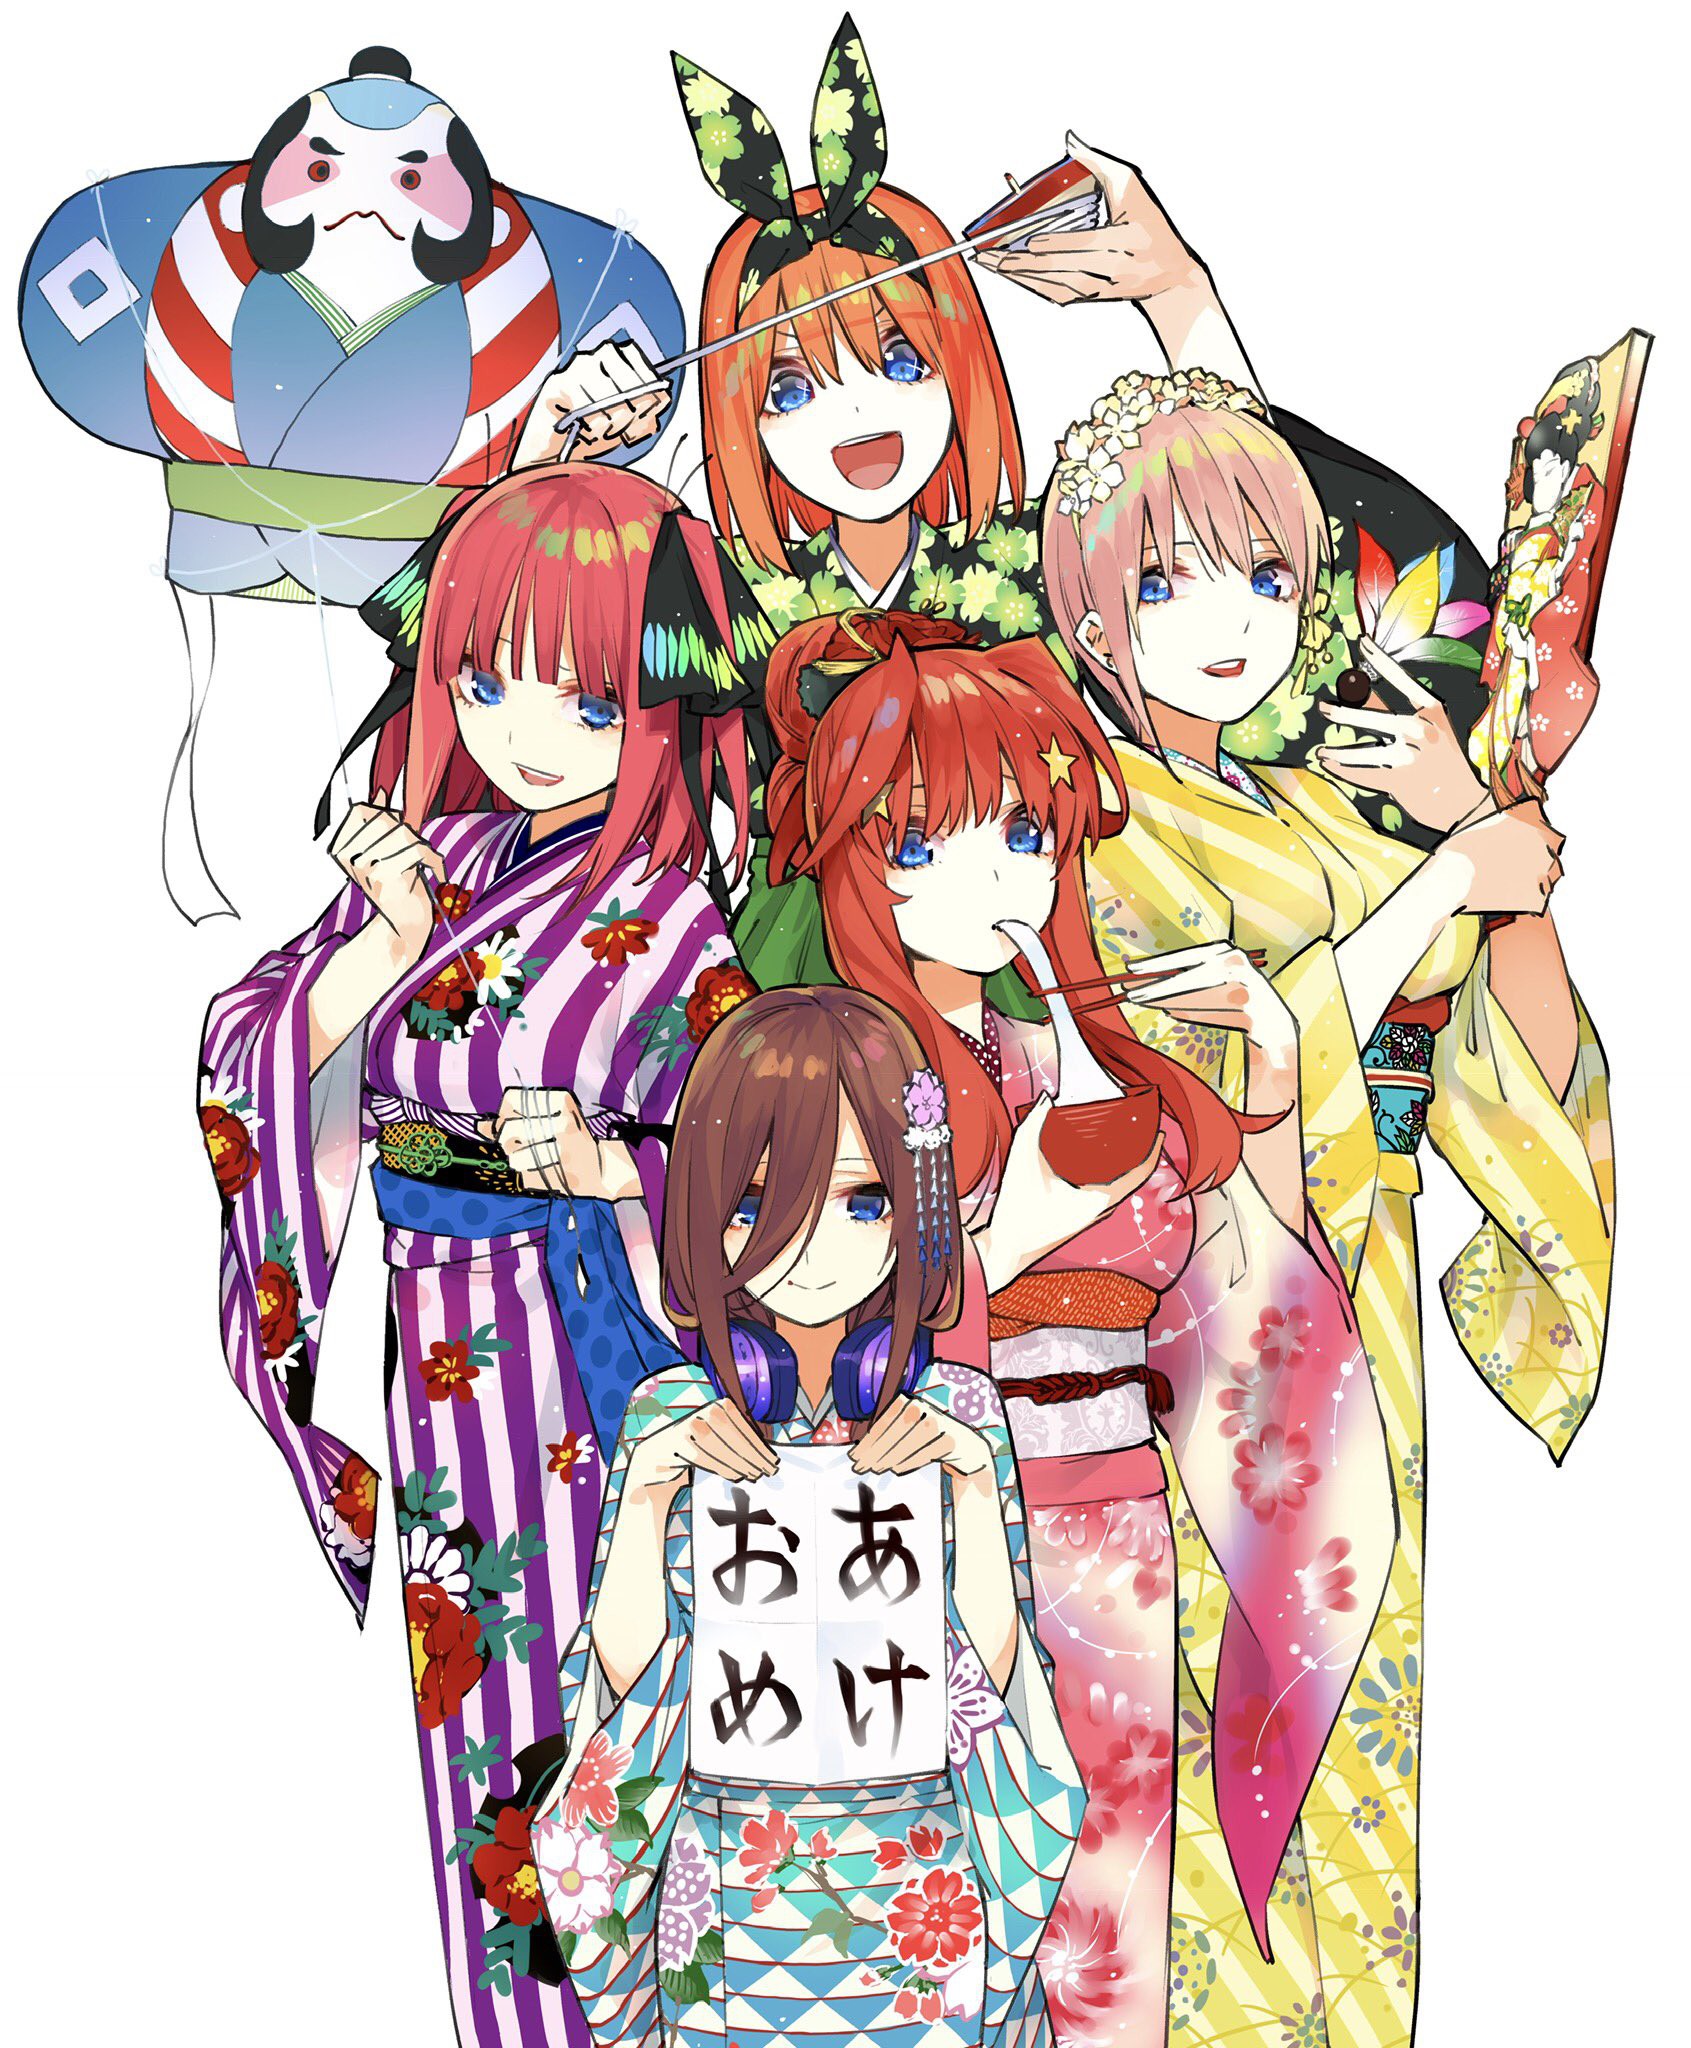 Ngắm lại loạt ảnh chúc mừng năm mới đến từ các mangaka Nhật Bản ...